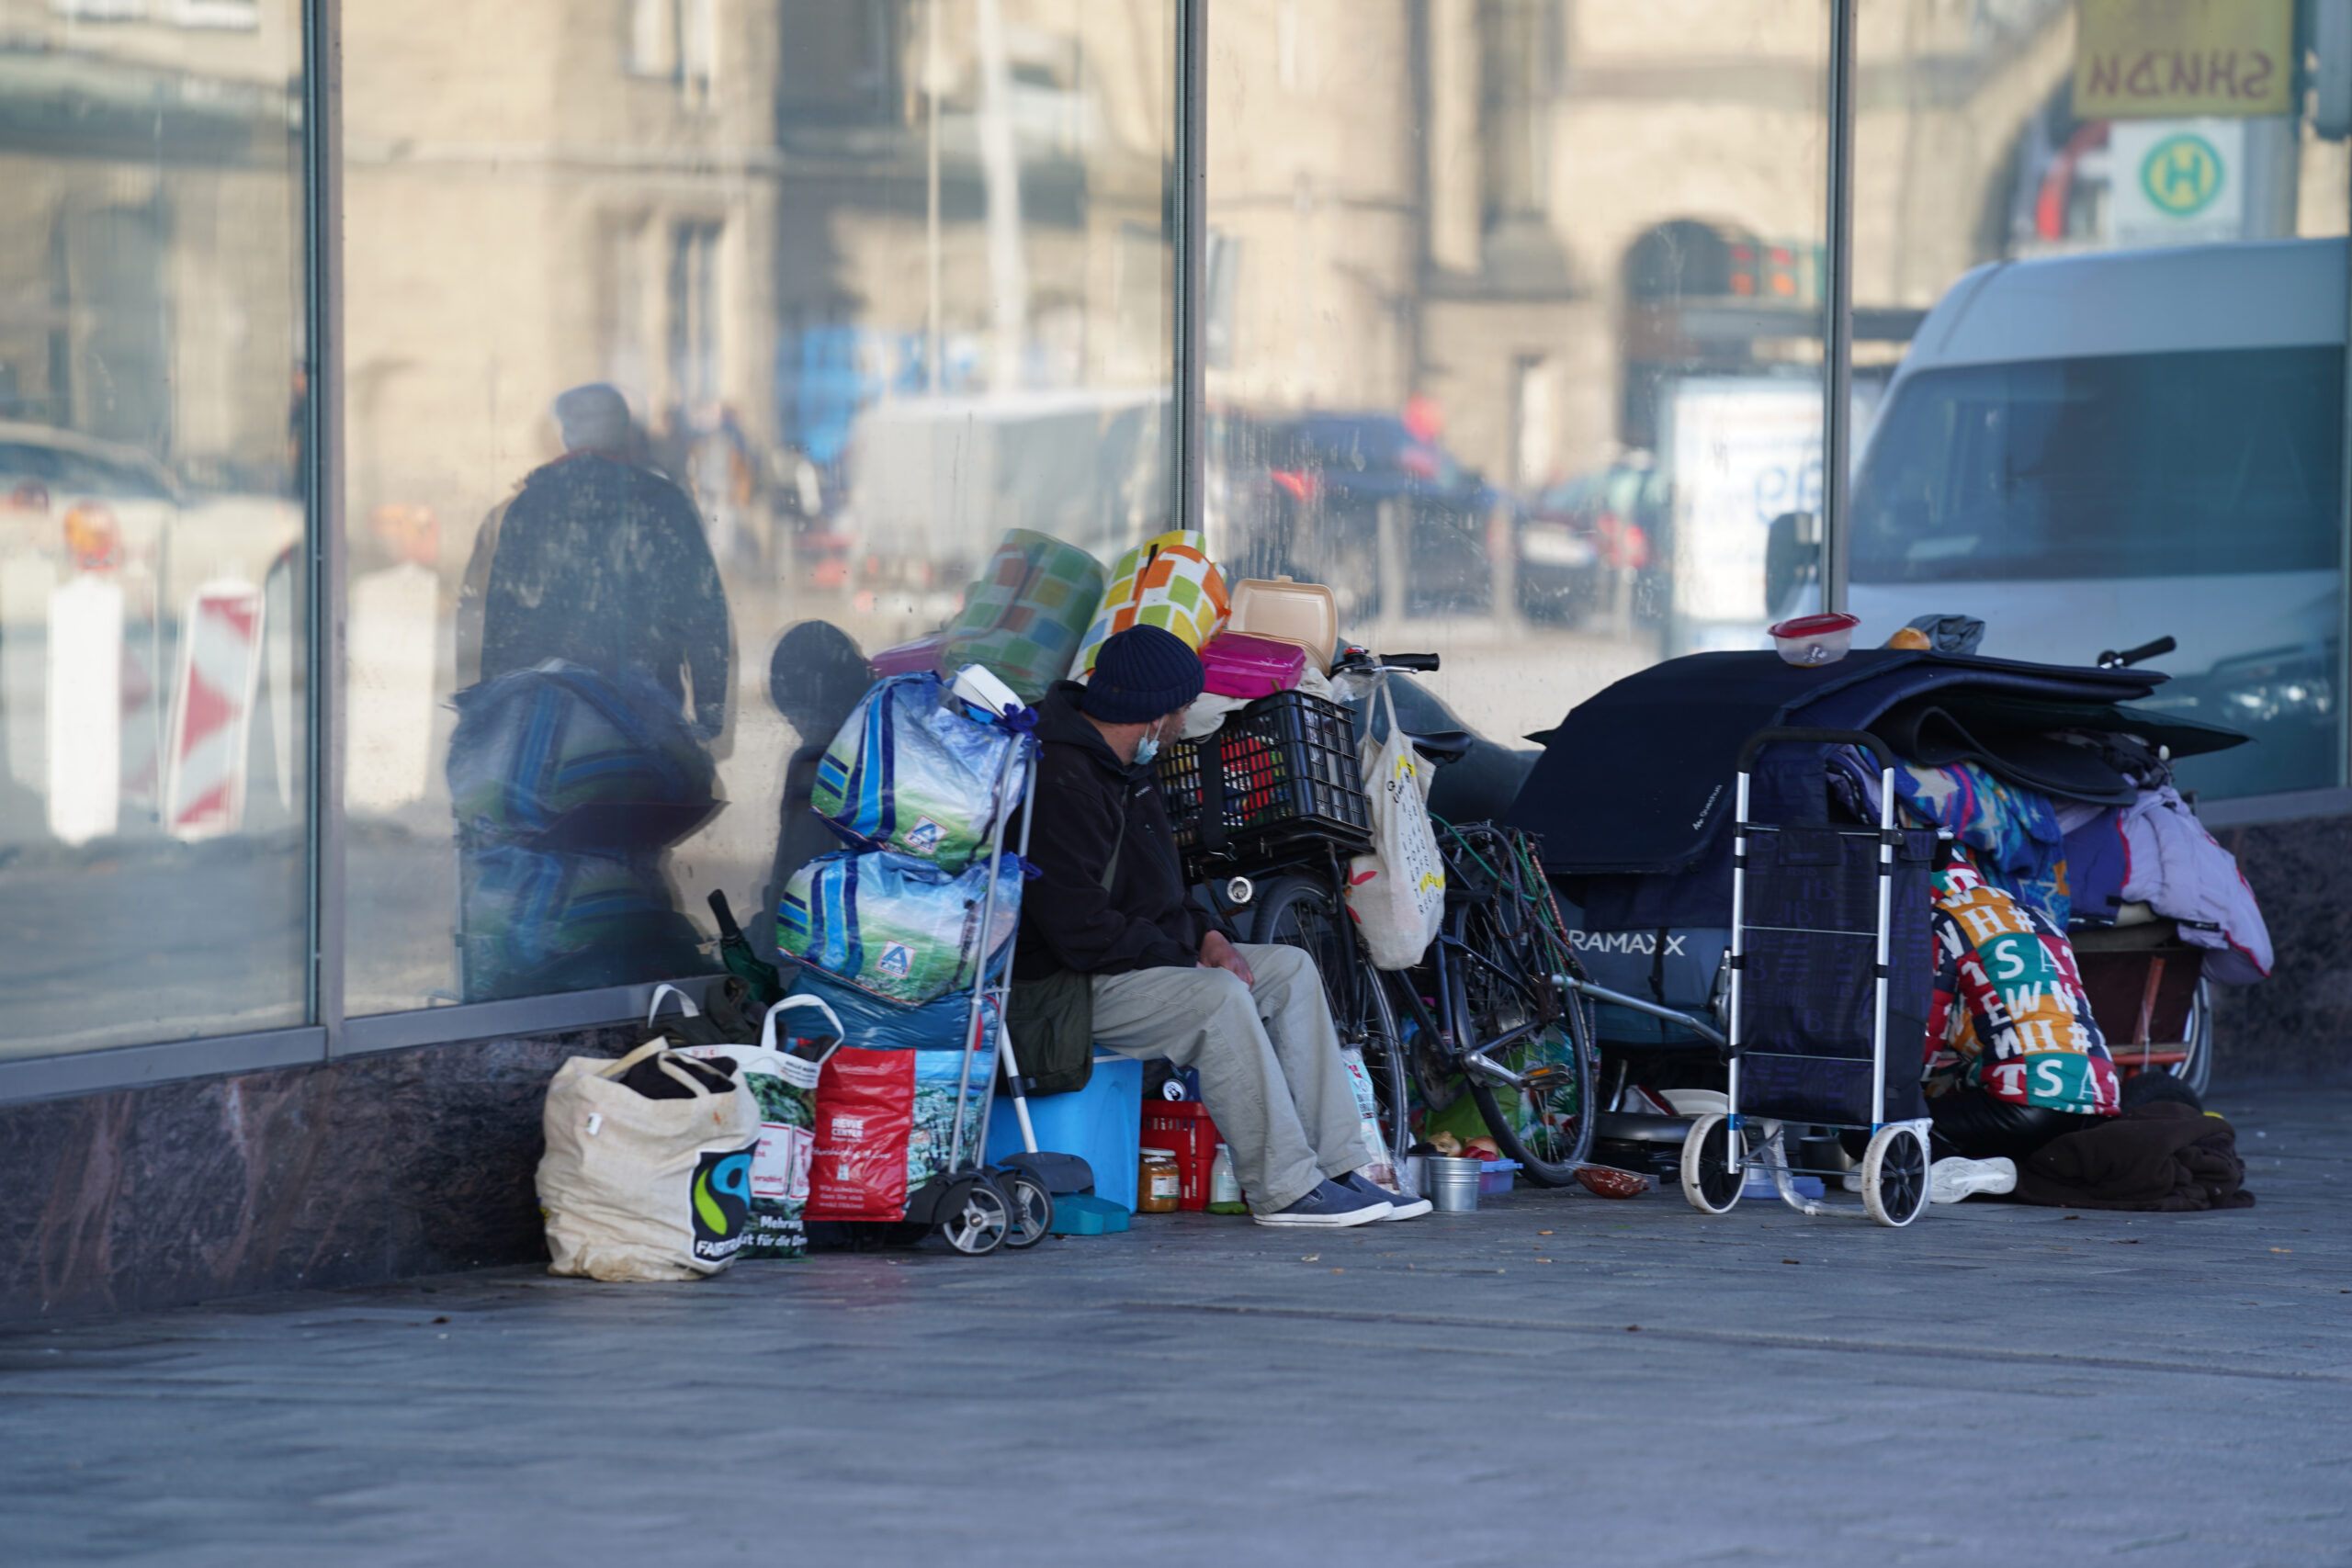 Obdachlose aObdachlose Menschen sitzen vor einem Geschäft in der Hamburger Innenstadt. Wegen der eisigen Kälte öffnet die Stadt das Winternotprogramm länger. (Archivbild)sitzen vor einem Geschäft in der Hamburger Innenstadt. (Archivbild)